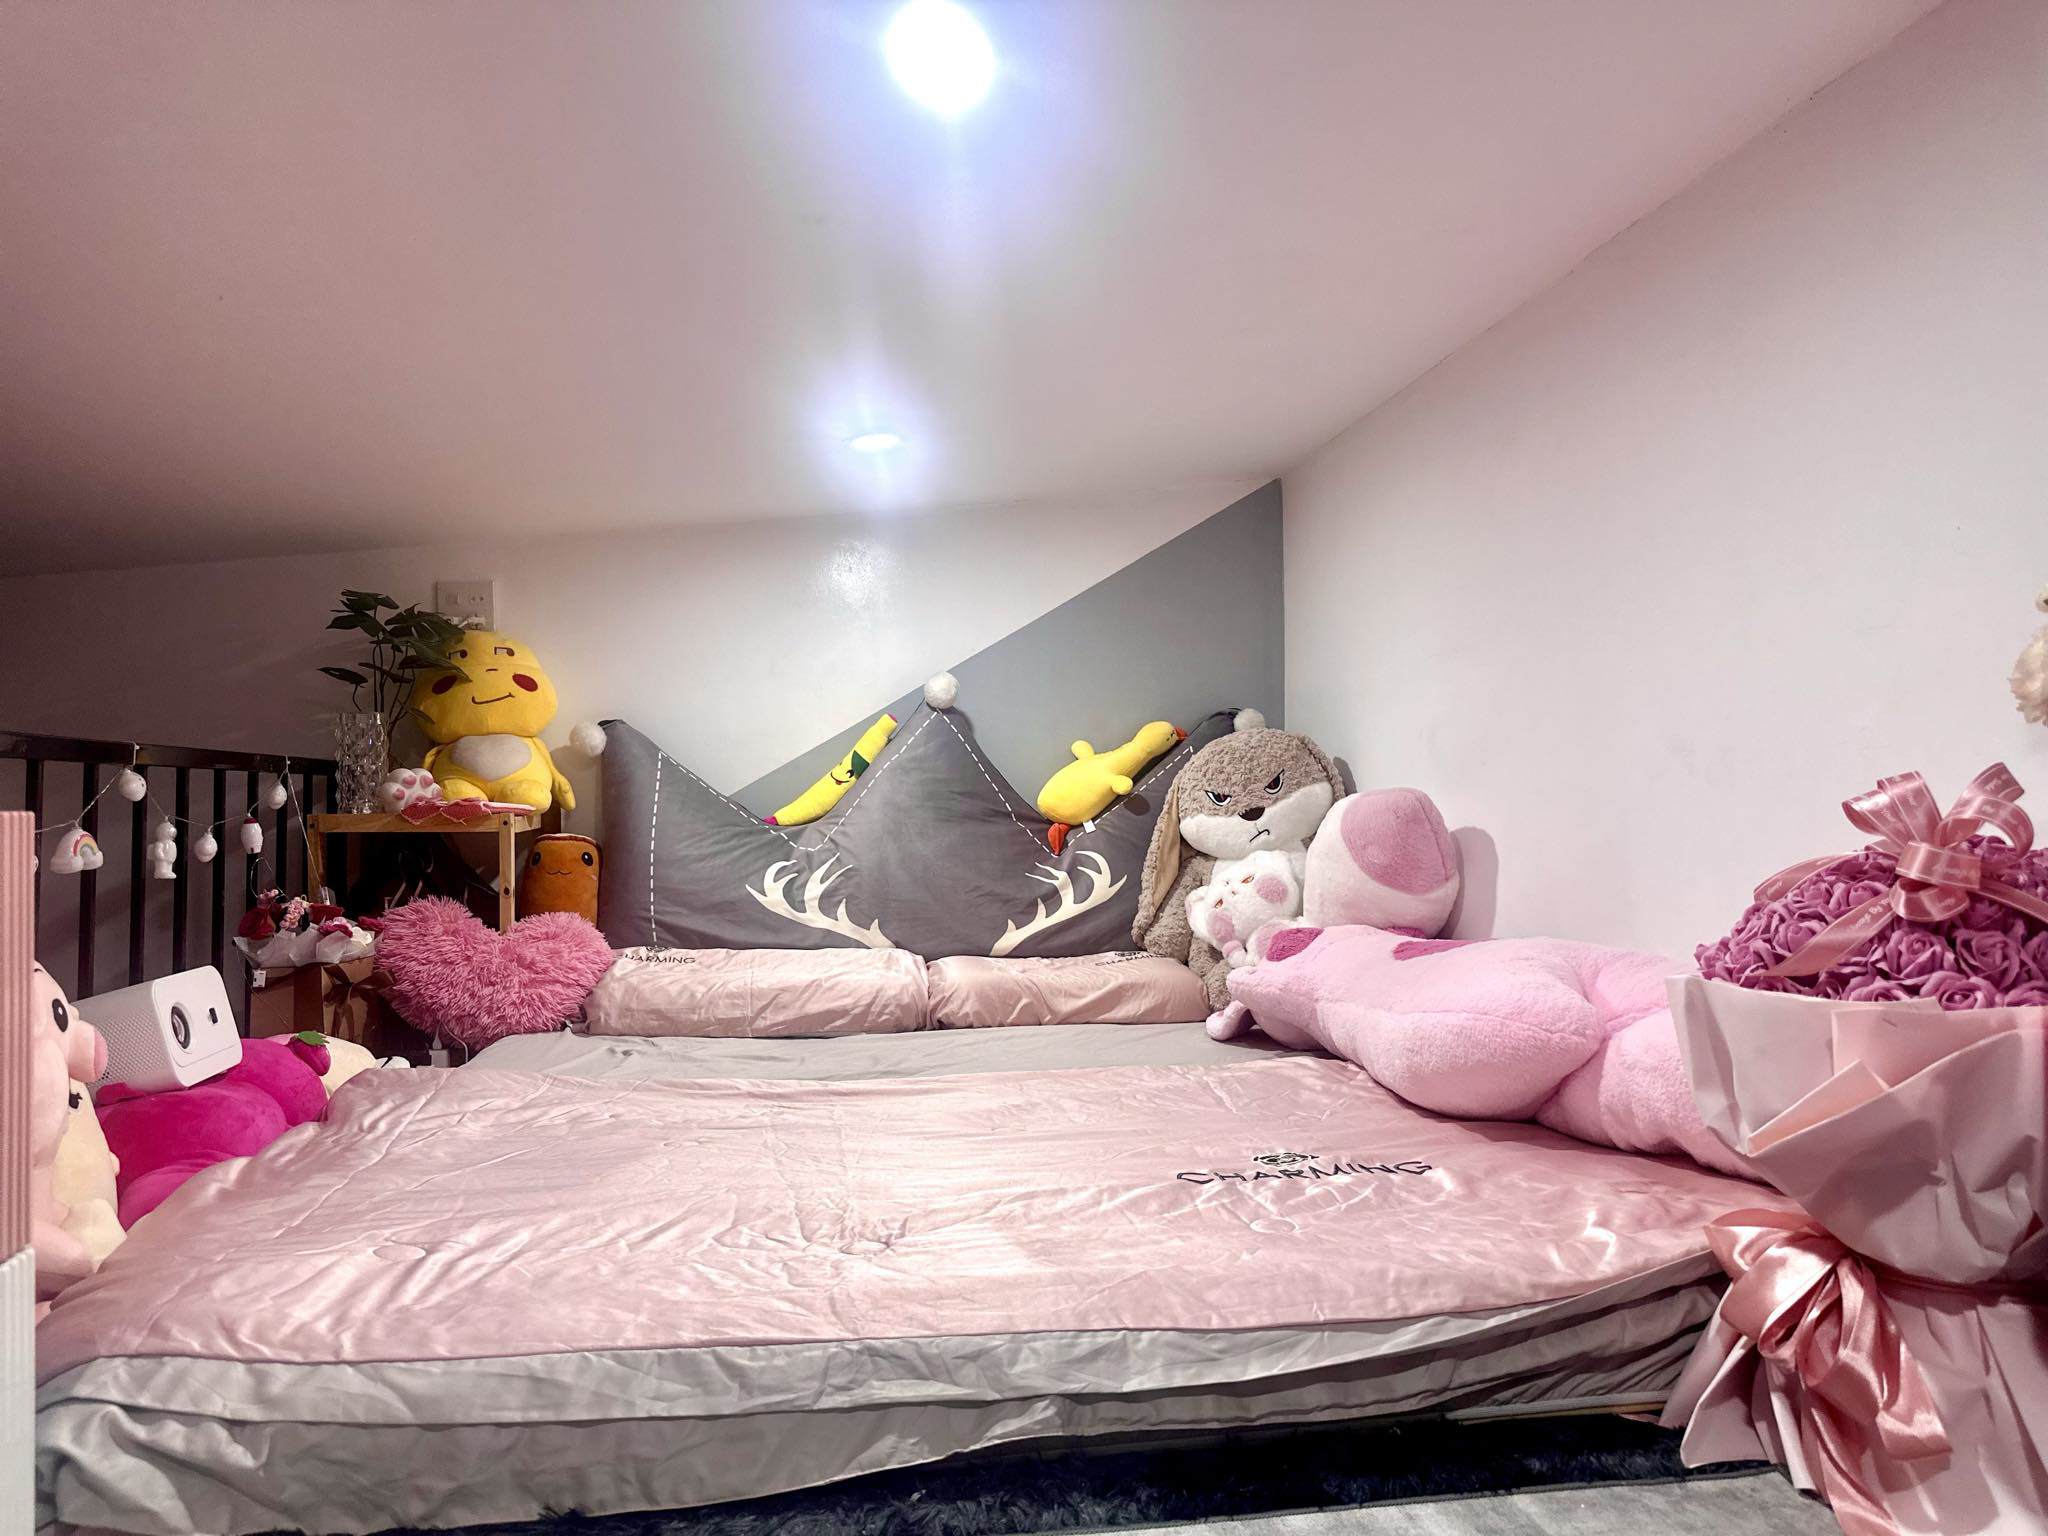 Kiều Anh dành không gian ở gác lửng làm phòng ngủ. Ga trải giường cũng có màu hồng, xung quanh đặt nhiều gấu bông màu hồng khiến giường ngủ như giường công chúa. Cô còn đầu tư 1,3 triệu mua máy chiếu để thi thoảng chiếu phim lên tường xem. 